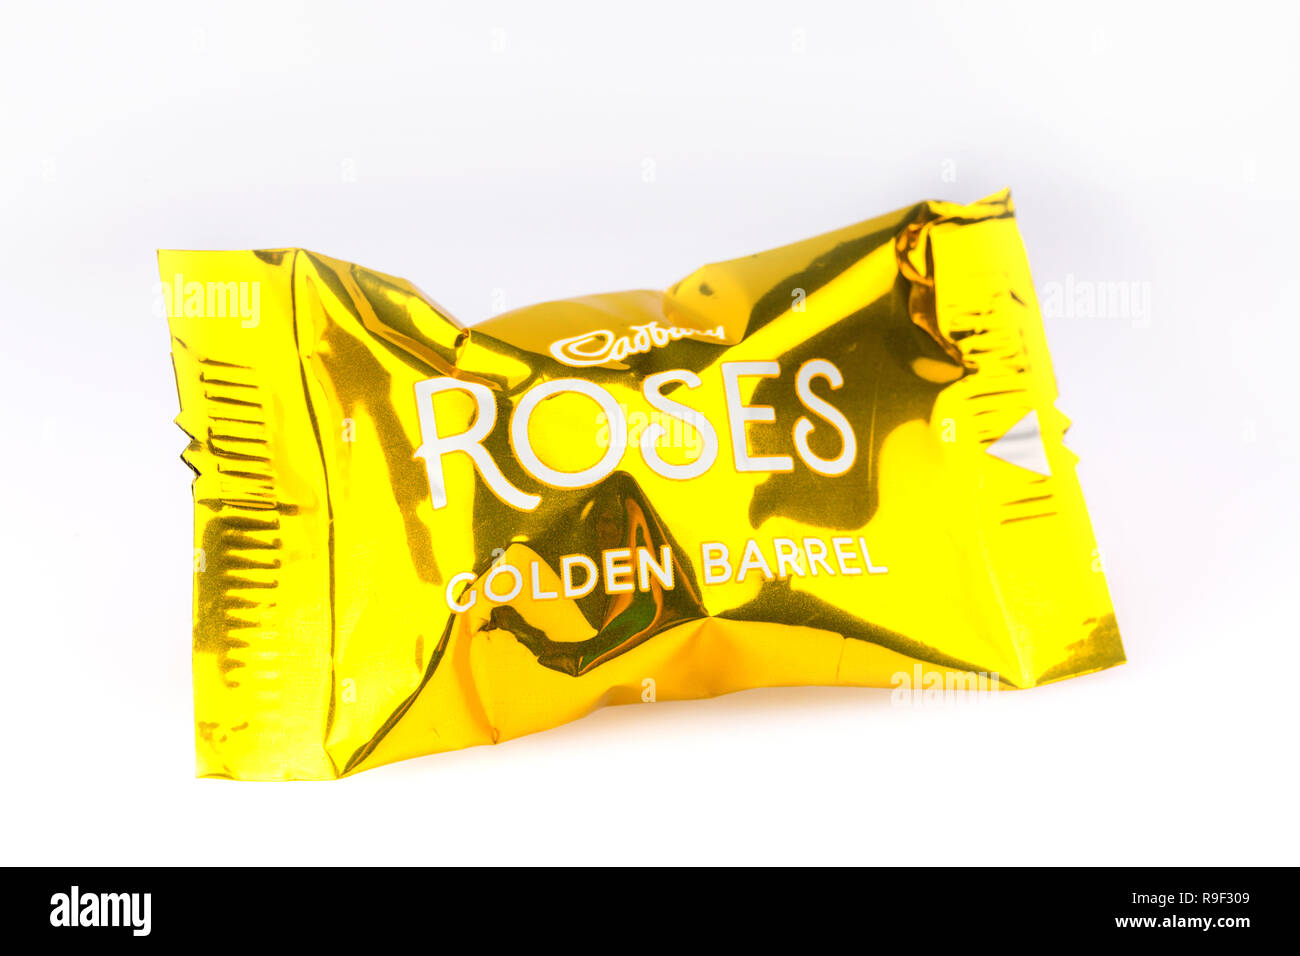 Golden Barrel Cadbury Roses Schokolade auf weißem Hintergrund Stockfoto